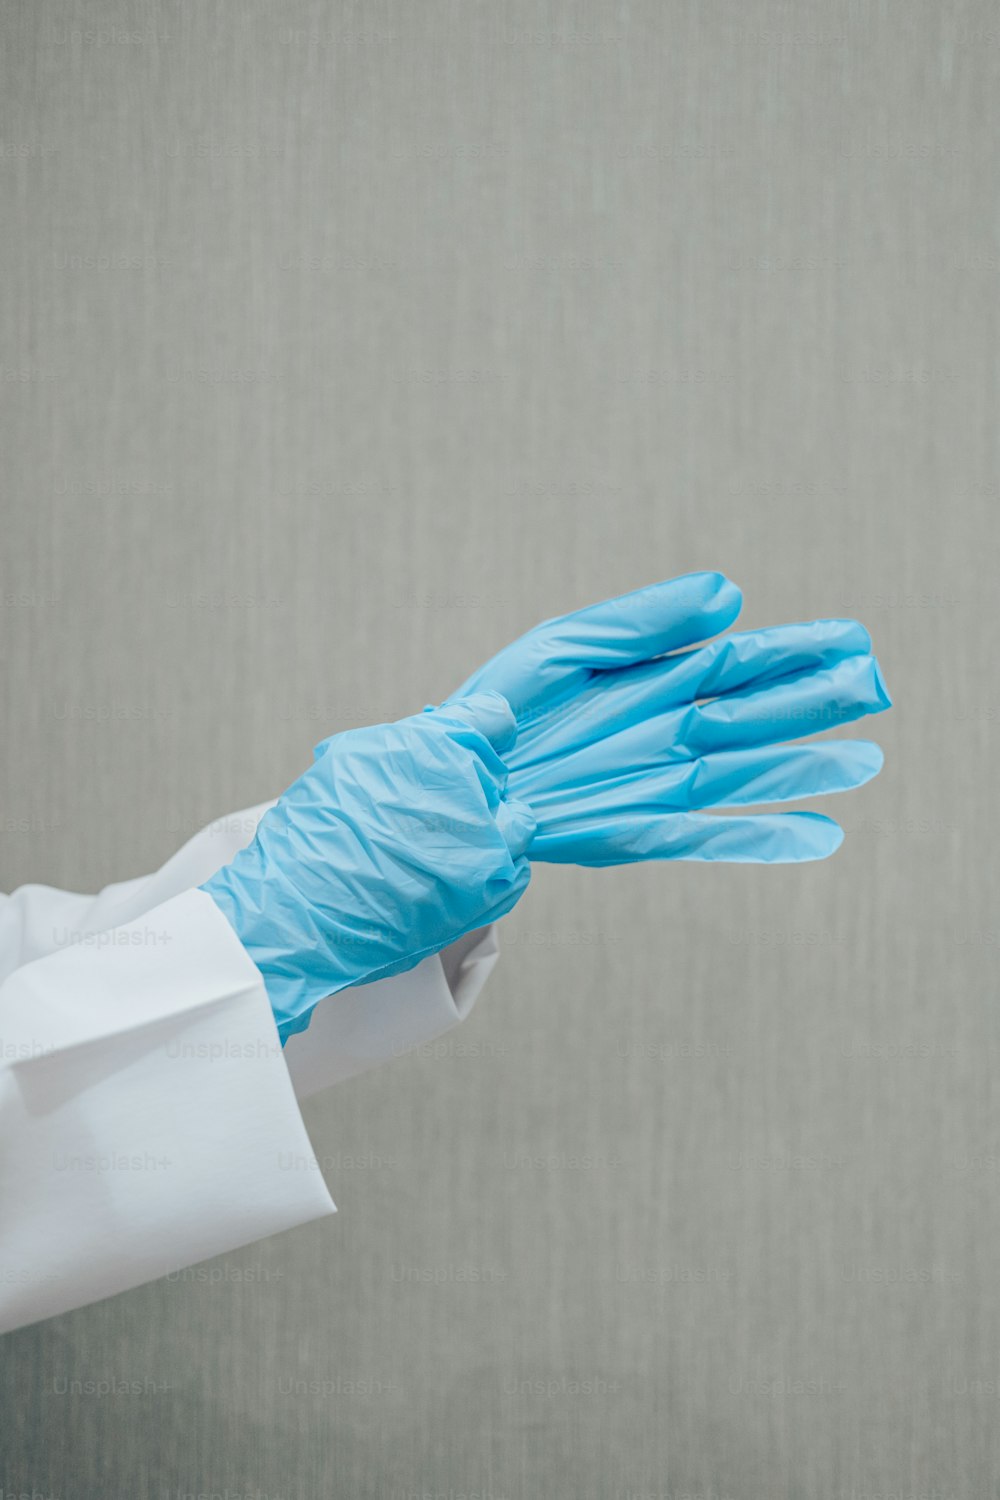 une personne en blouse blanche et gants bleus